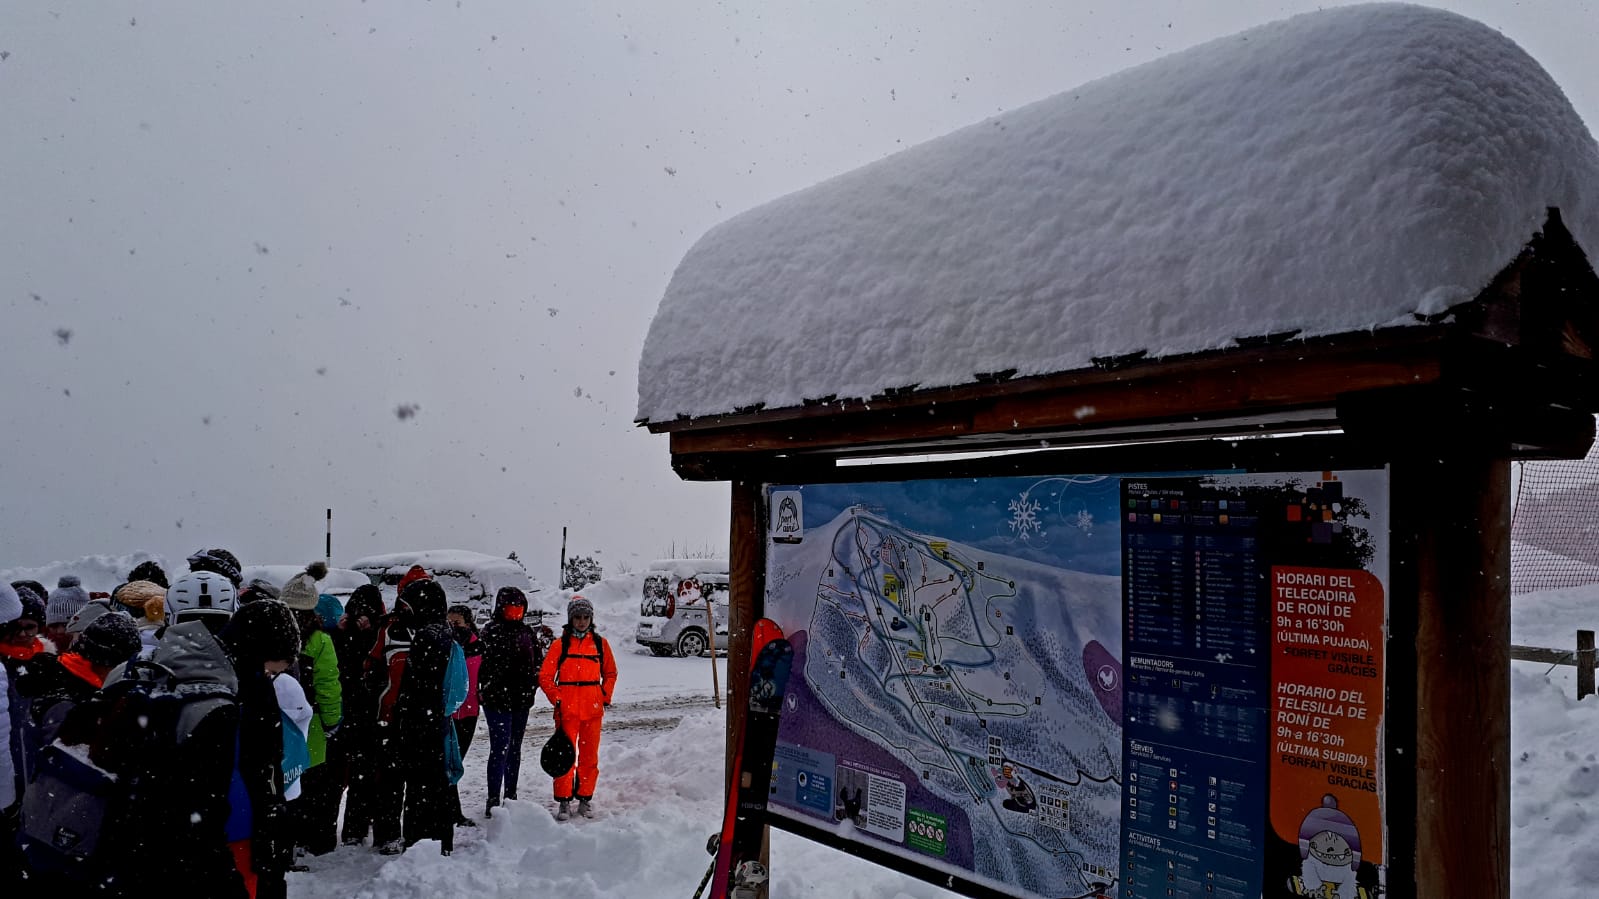 Fotografia d'estació d'esquí mentre neva